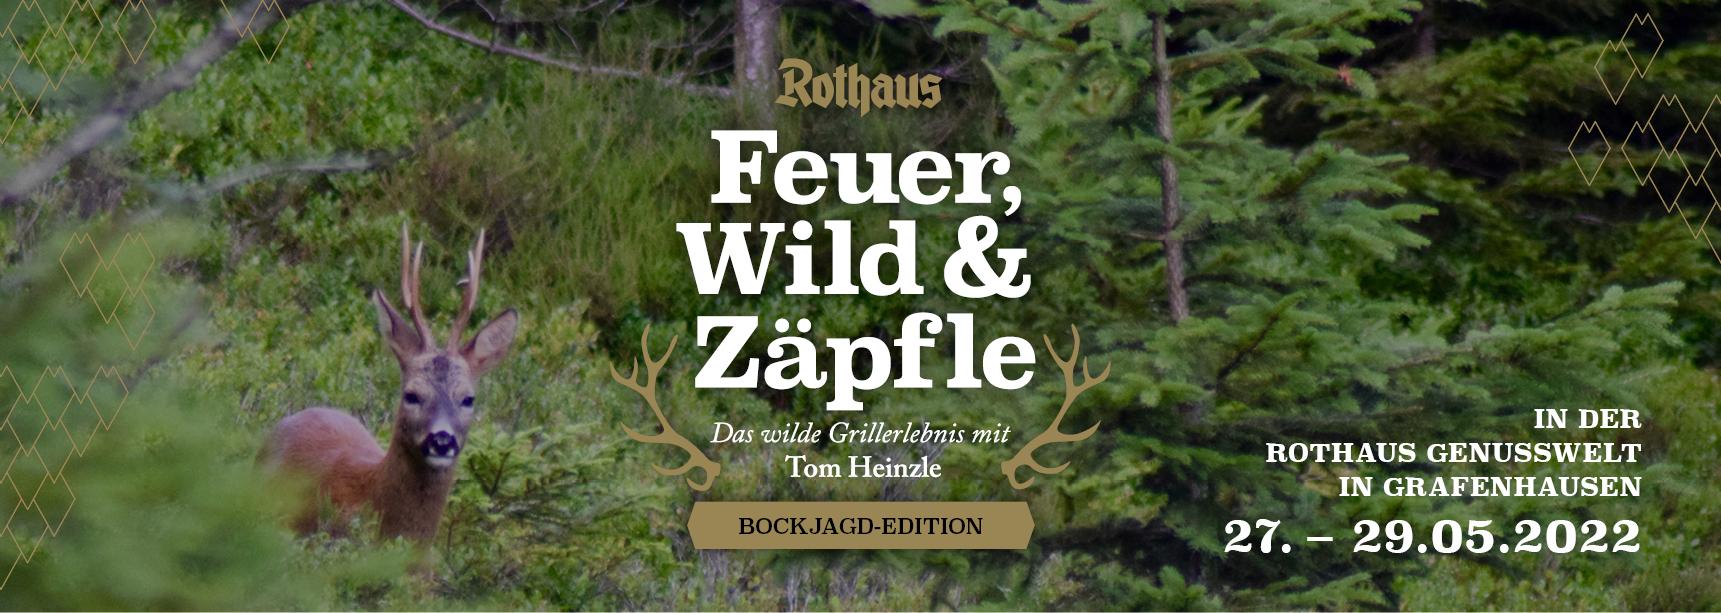 Feuer, Wild und Zäpfle: Bockjagd-Edition